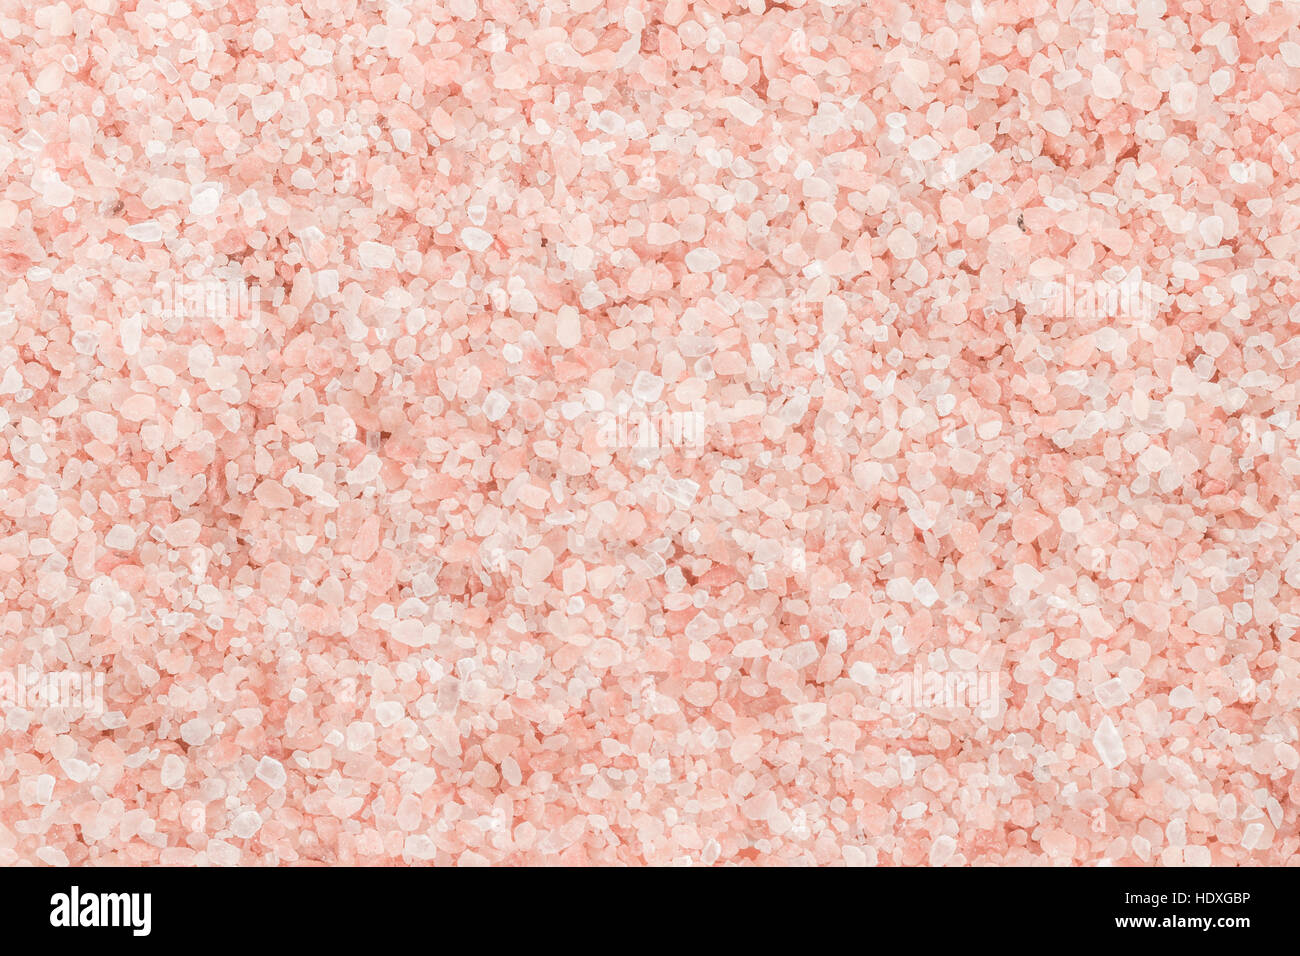 Edible Pink Himalayan rock salt background Stock Photo